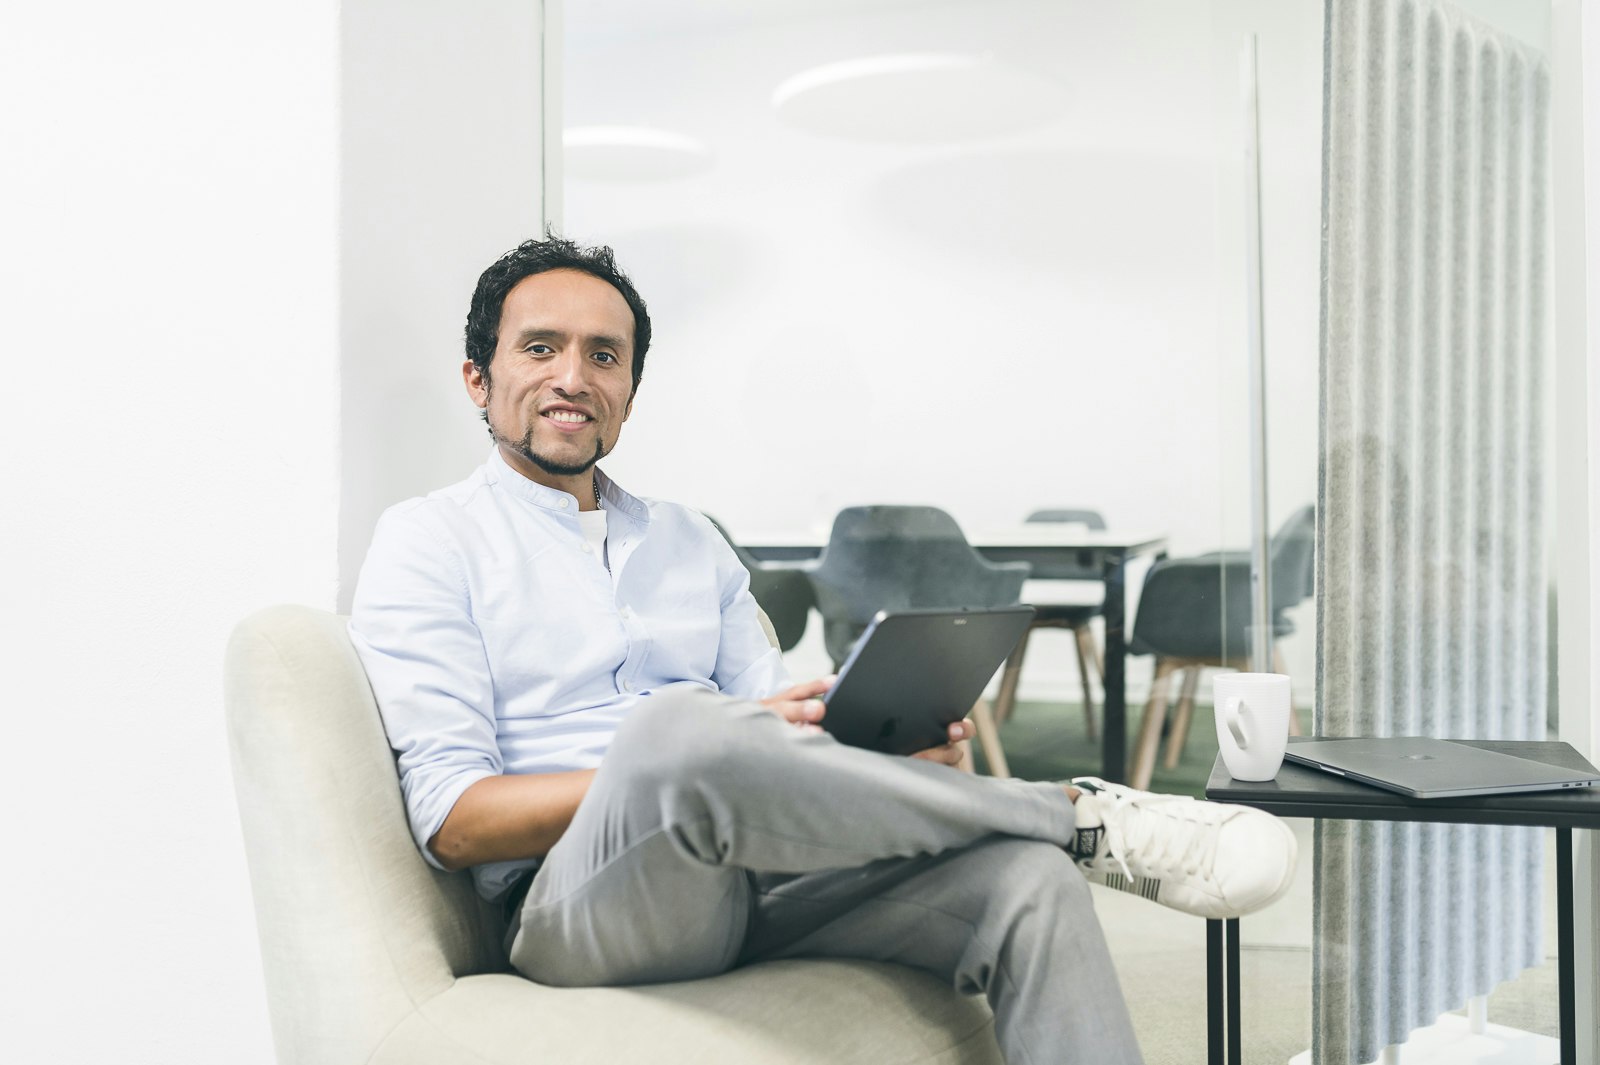 Jordan Hugo Abanto auf einer Couch in einem modernen Büro, das iPad in der Hand.